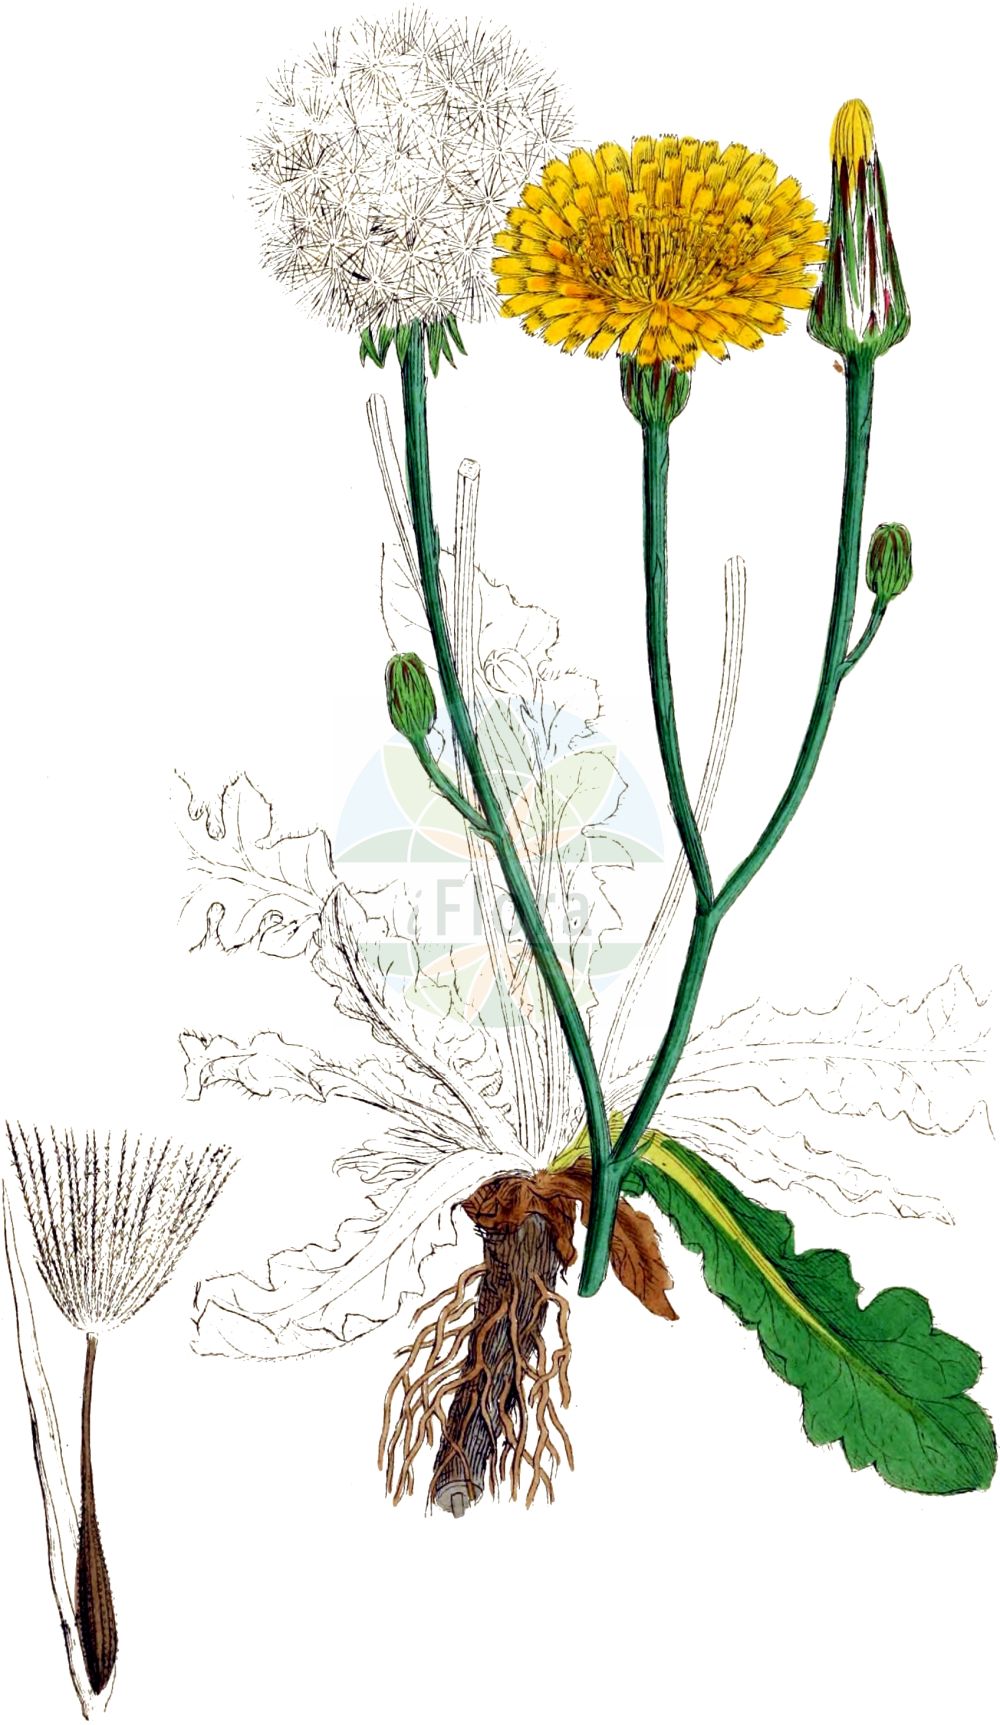 Historische Abbildung von Hypochaeris radicata (Gewöhnliches Ferkelkraut - Cat's-ear). Das Bild zeigt Blatt, Bluete, Frucht und Same. ---- Historical Drawing of Hypochaeris radicata (Gewöhnliches Ferkelkraut - Cat's-ear). The image is showing leaf, flower, fruit and seed.(Hypochaeris radicata,Gewöhnliches Ferkelkraut,Cat's-ear,Hypochaeris neapolitana,Hypochaeris radicata,Porcellites radicata,Seriola caespitosa,Gewoehnliches Ferkelkraut,Cat's-ear,Hairy Cat's Ear,Cat's-ear Dandelion,Common Cat's-ear,Flatweed,Gosmore,Hairy Wild Lettuce,Spotted Cat's-ear,Hypochaeris,Ferkelkraut,Cat's Ear,Asteraceae,Korbblütengewächse,Daisy family,Blatt,Bluete,Frucht,Same,leaf,flower,fruit,seed,Sowerby (1790-1813))